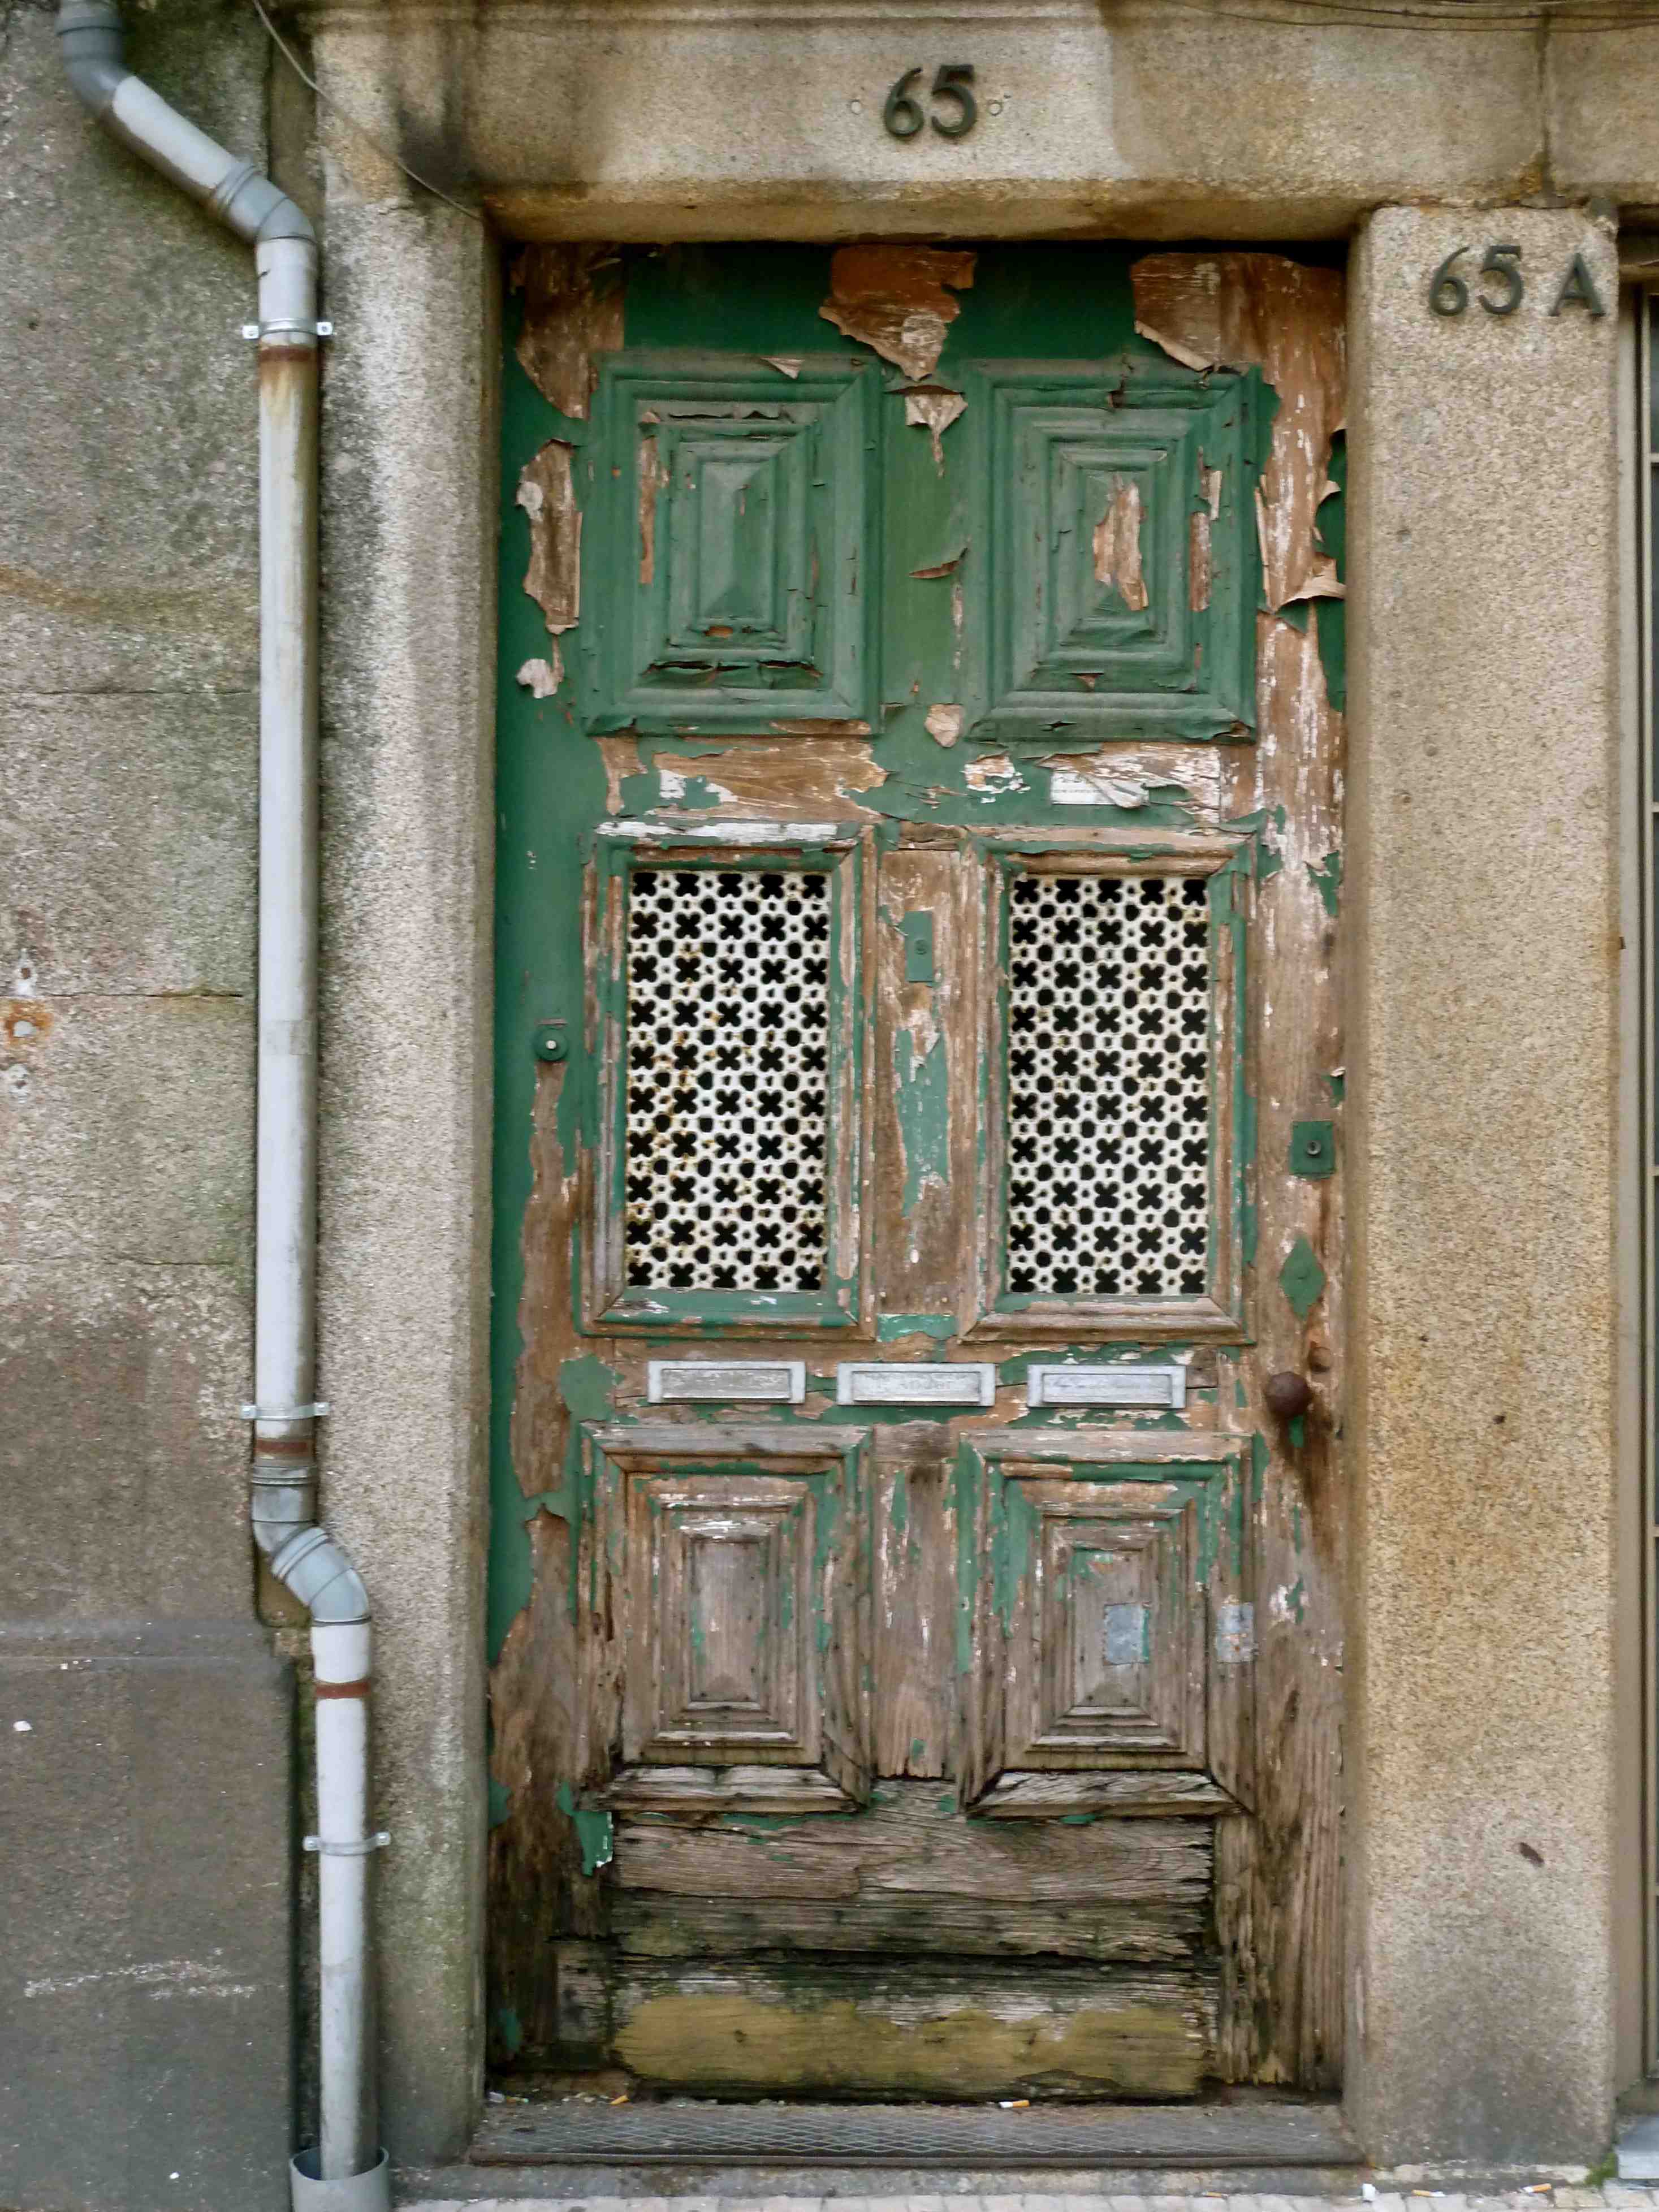 9 unique old Doors - llowll | Amazing doors and windows | Pinterest ...